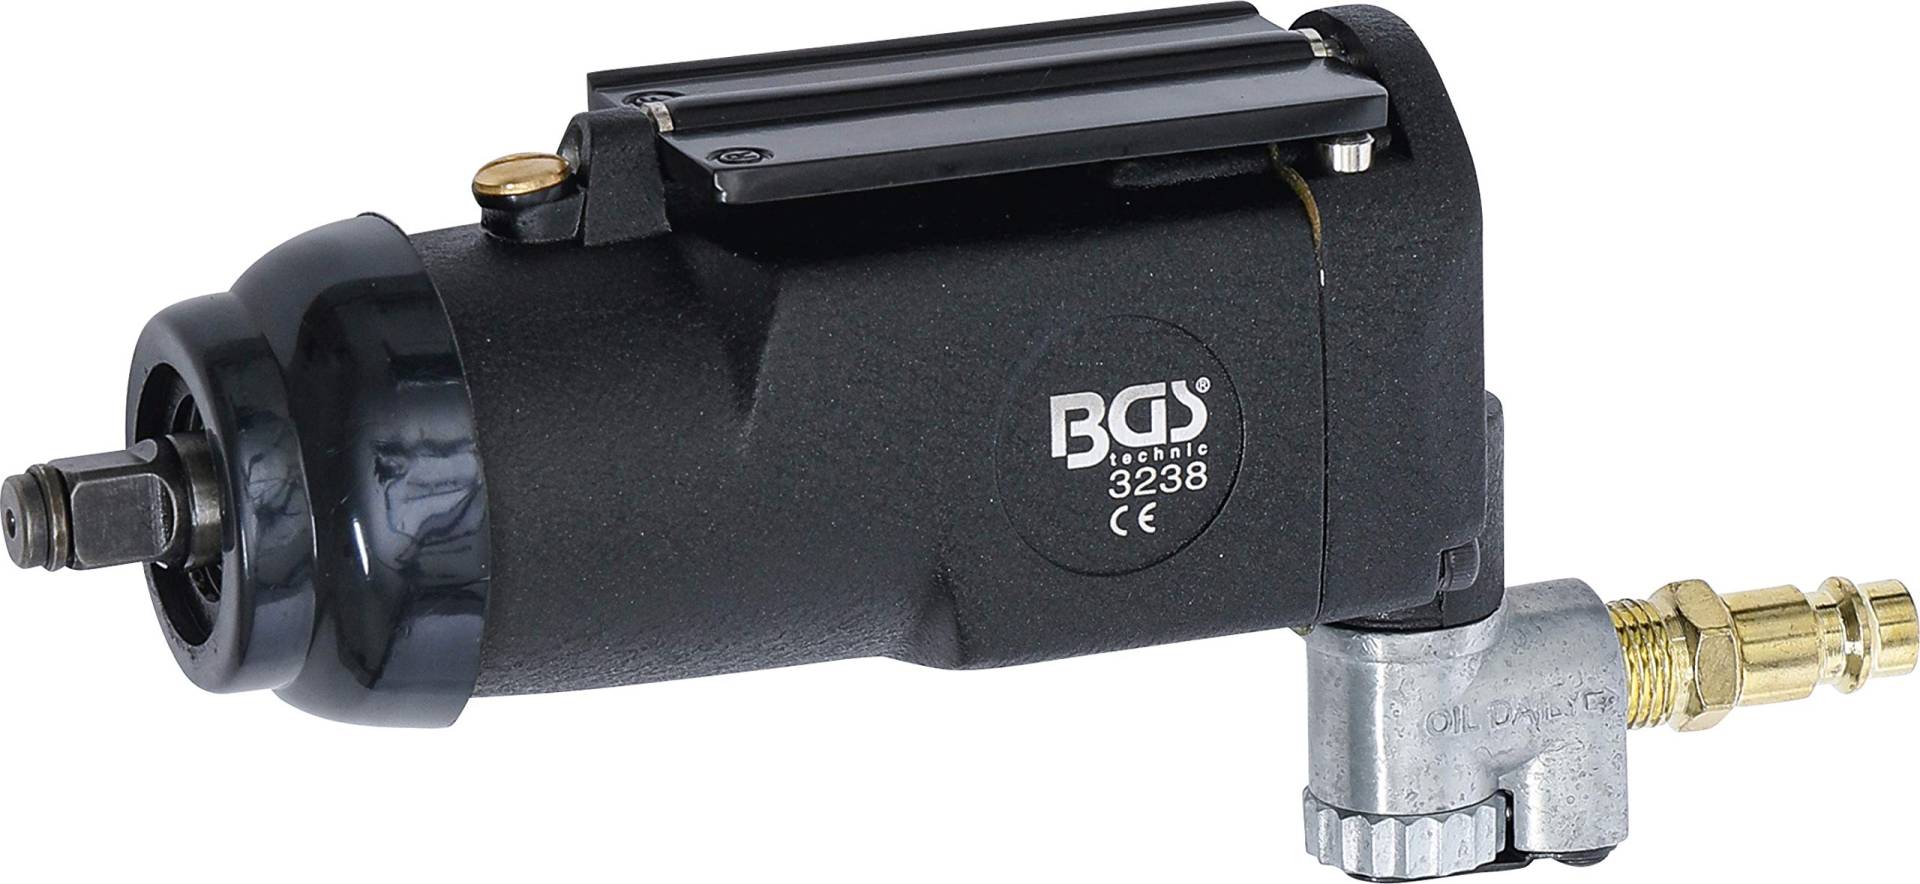 BGS 3238 | Druckluft-Schlagschrauber | 10 mm (3/8") | "Butterfly" | 135 Nm von BGS